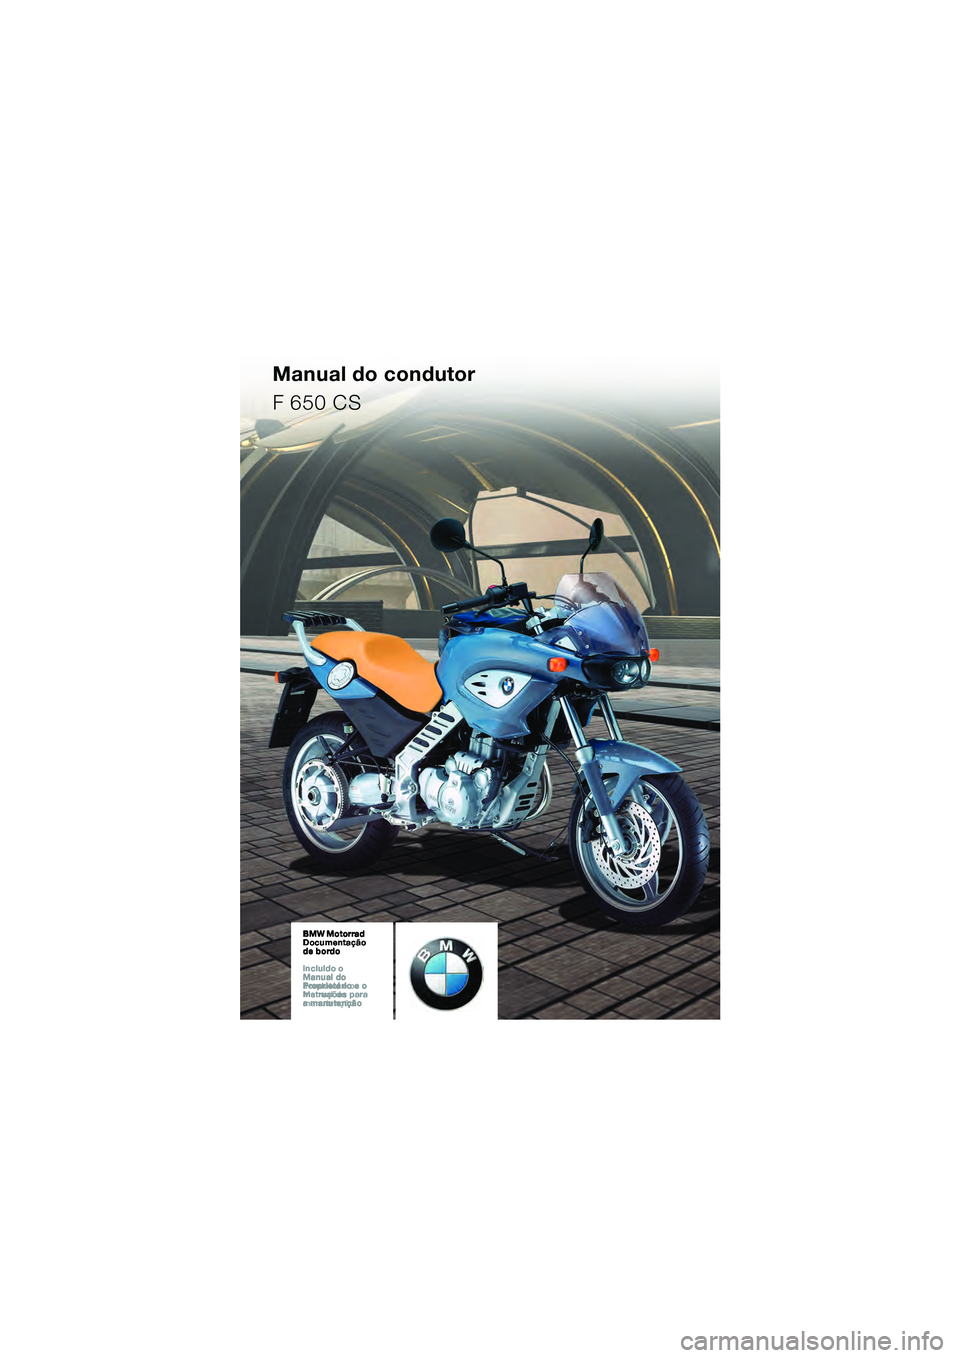 BMW MOTORRAD F 650 CS 2003  Manual do condutor (in Portuguese) Manual do condutor
F 650 CS
10K14cop2.fm  Seite 1  Montag, 29. September 2003  4:33 16 